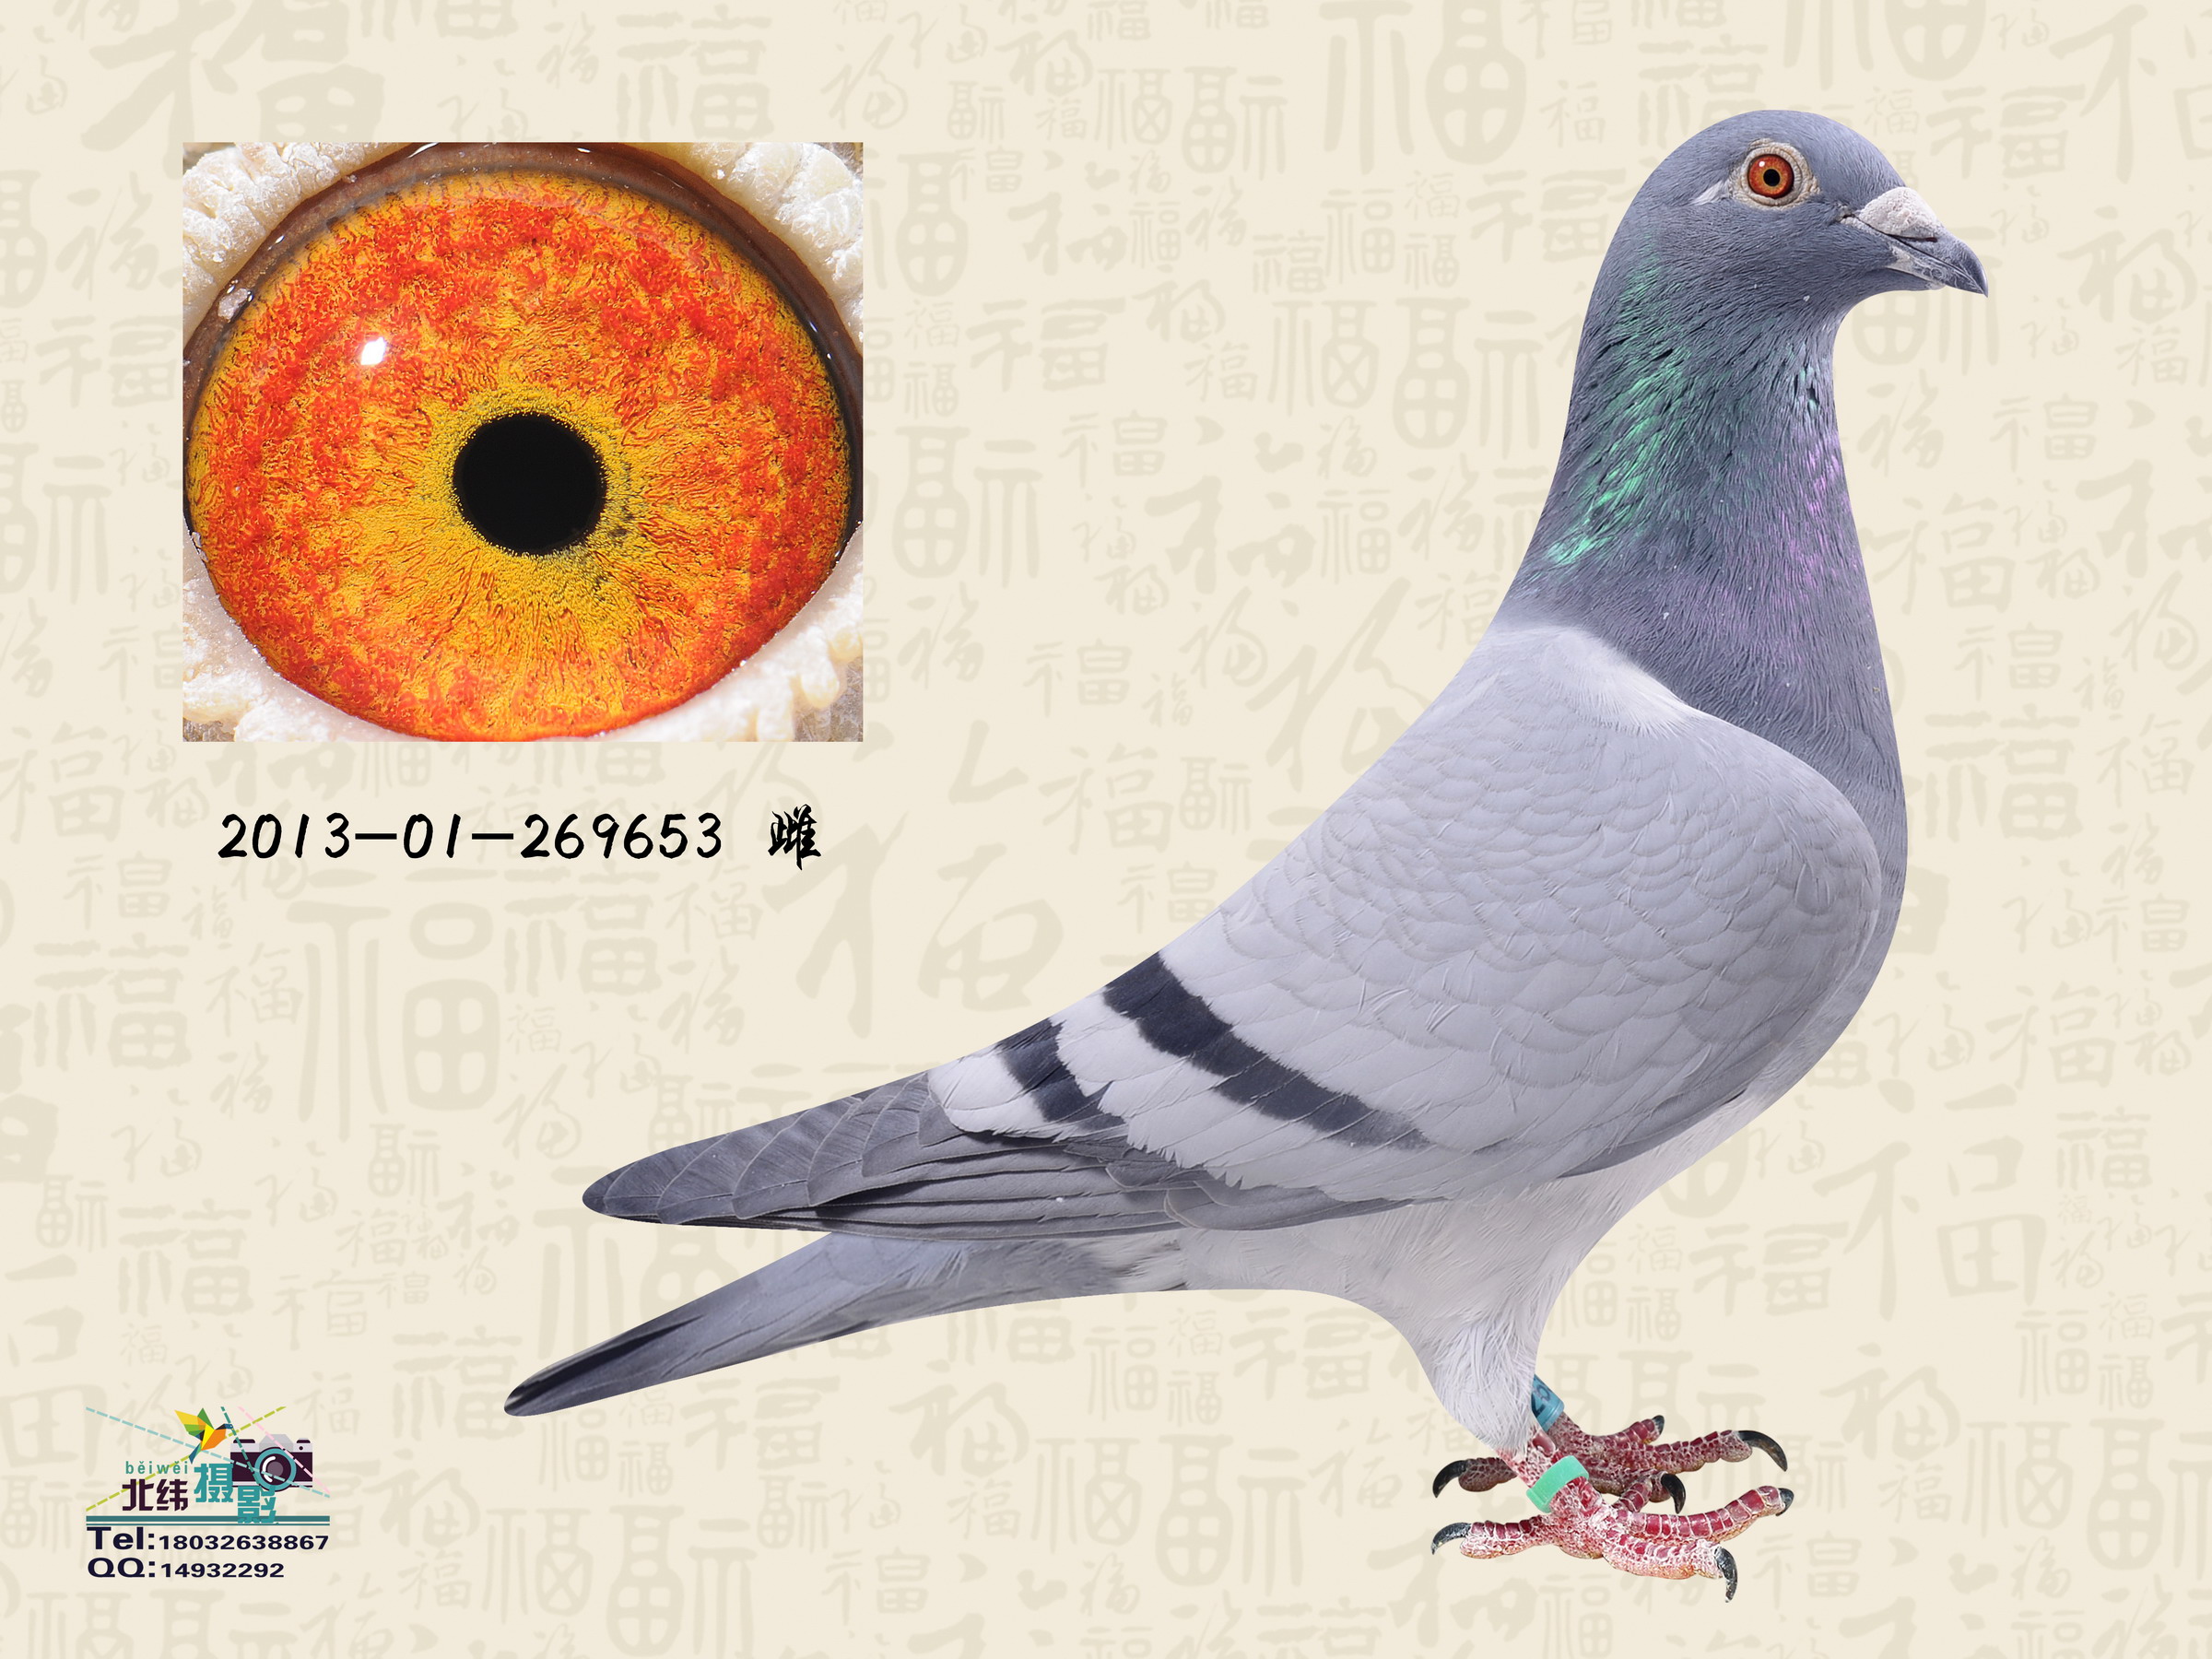 信鸽特征编 号:366229鸽 名:羽 色:灰眼 砂:黄眼收 藏:点击收藏环 号